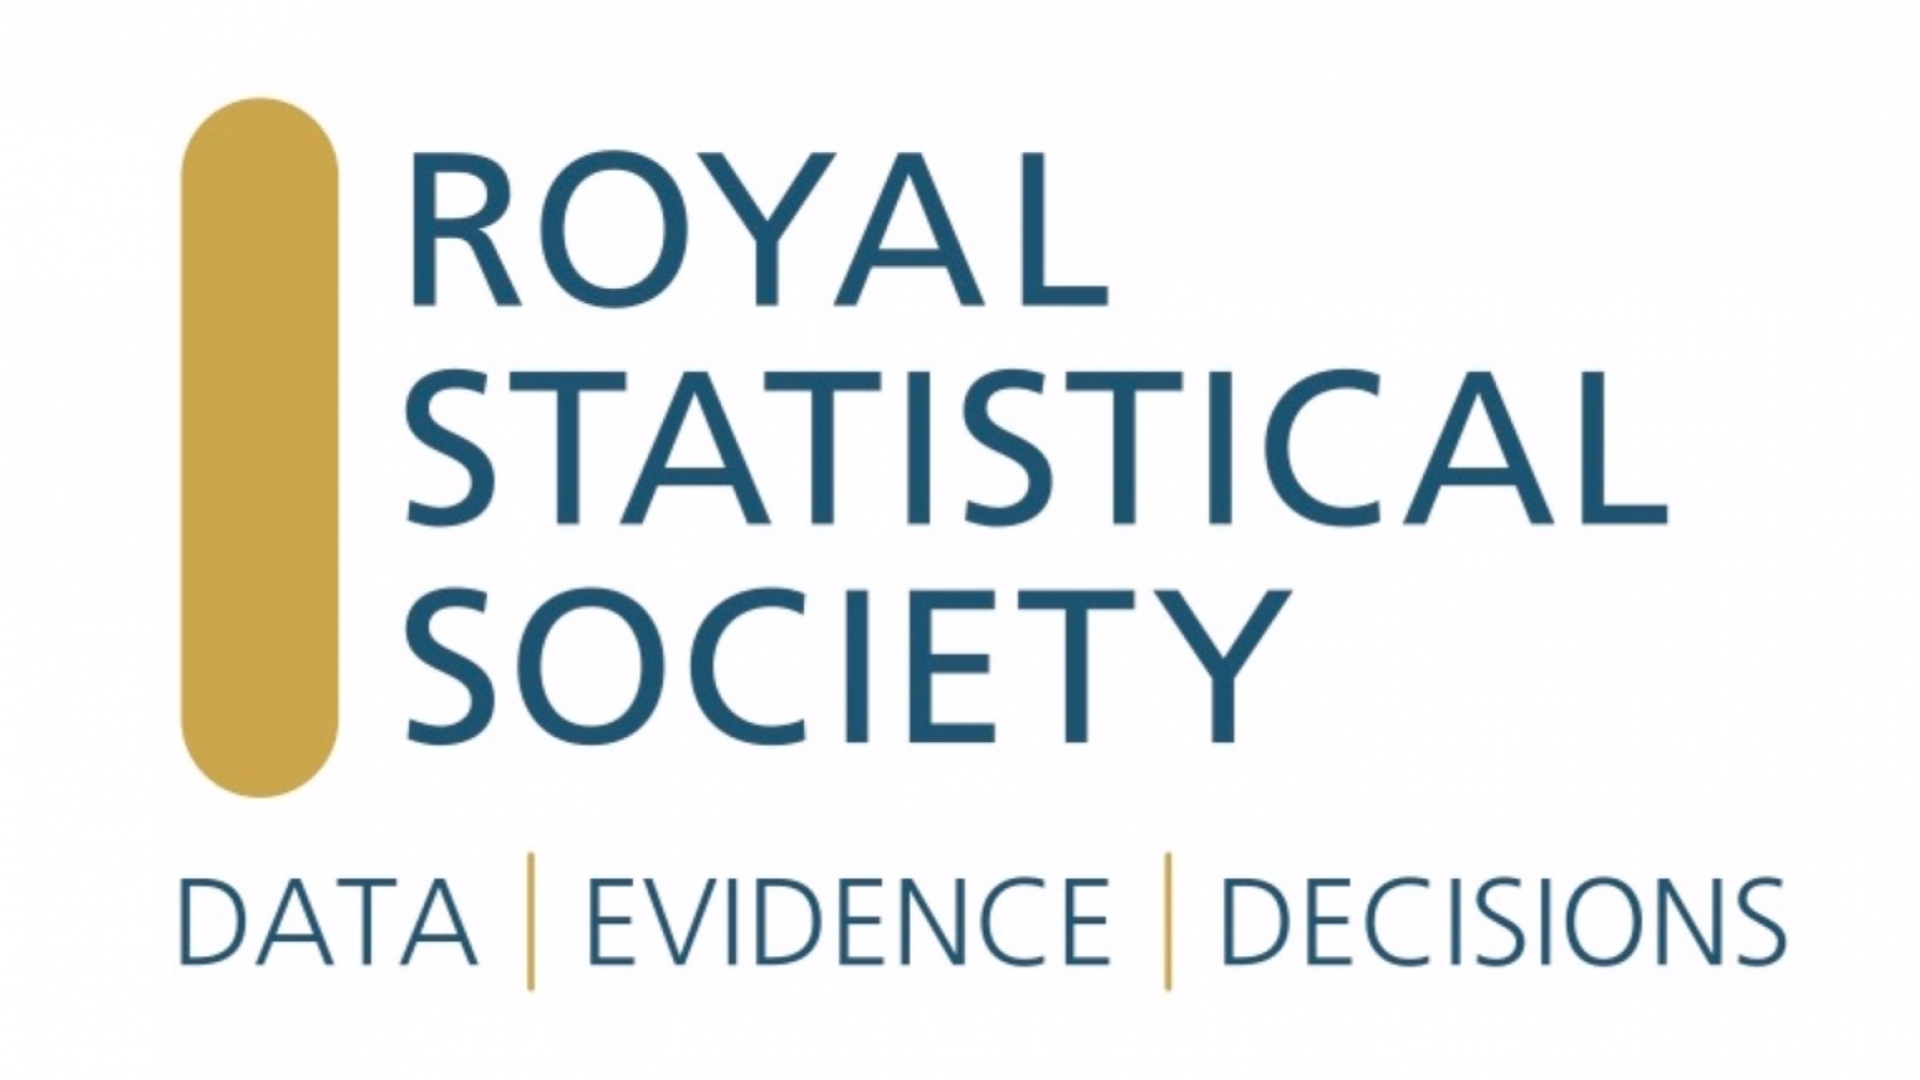 Royal Statistical Society